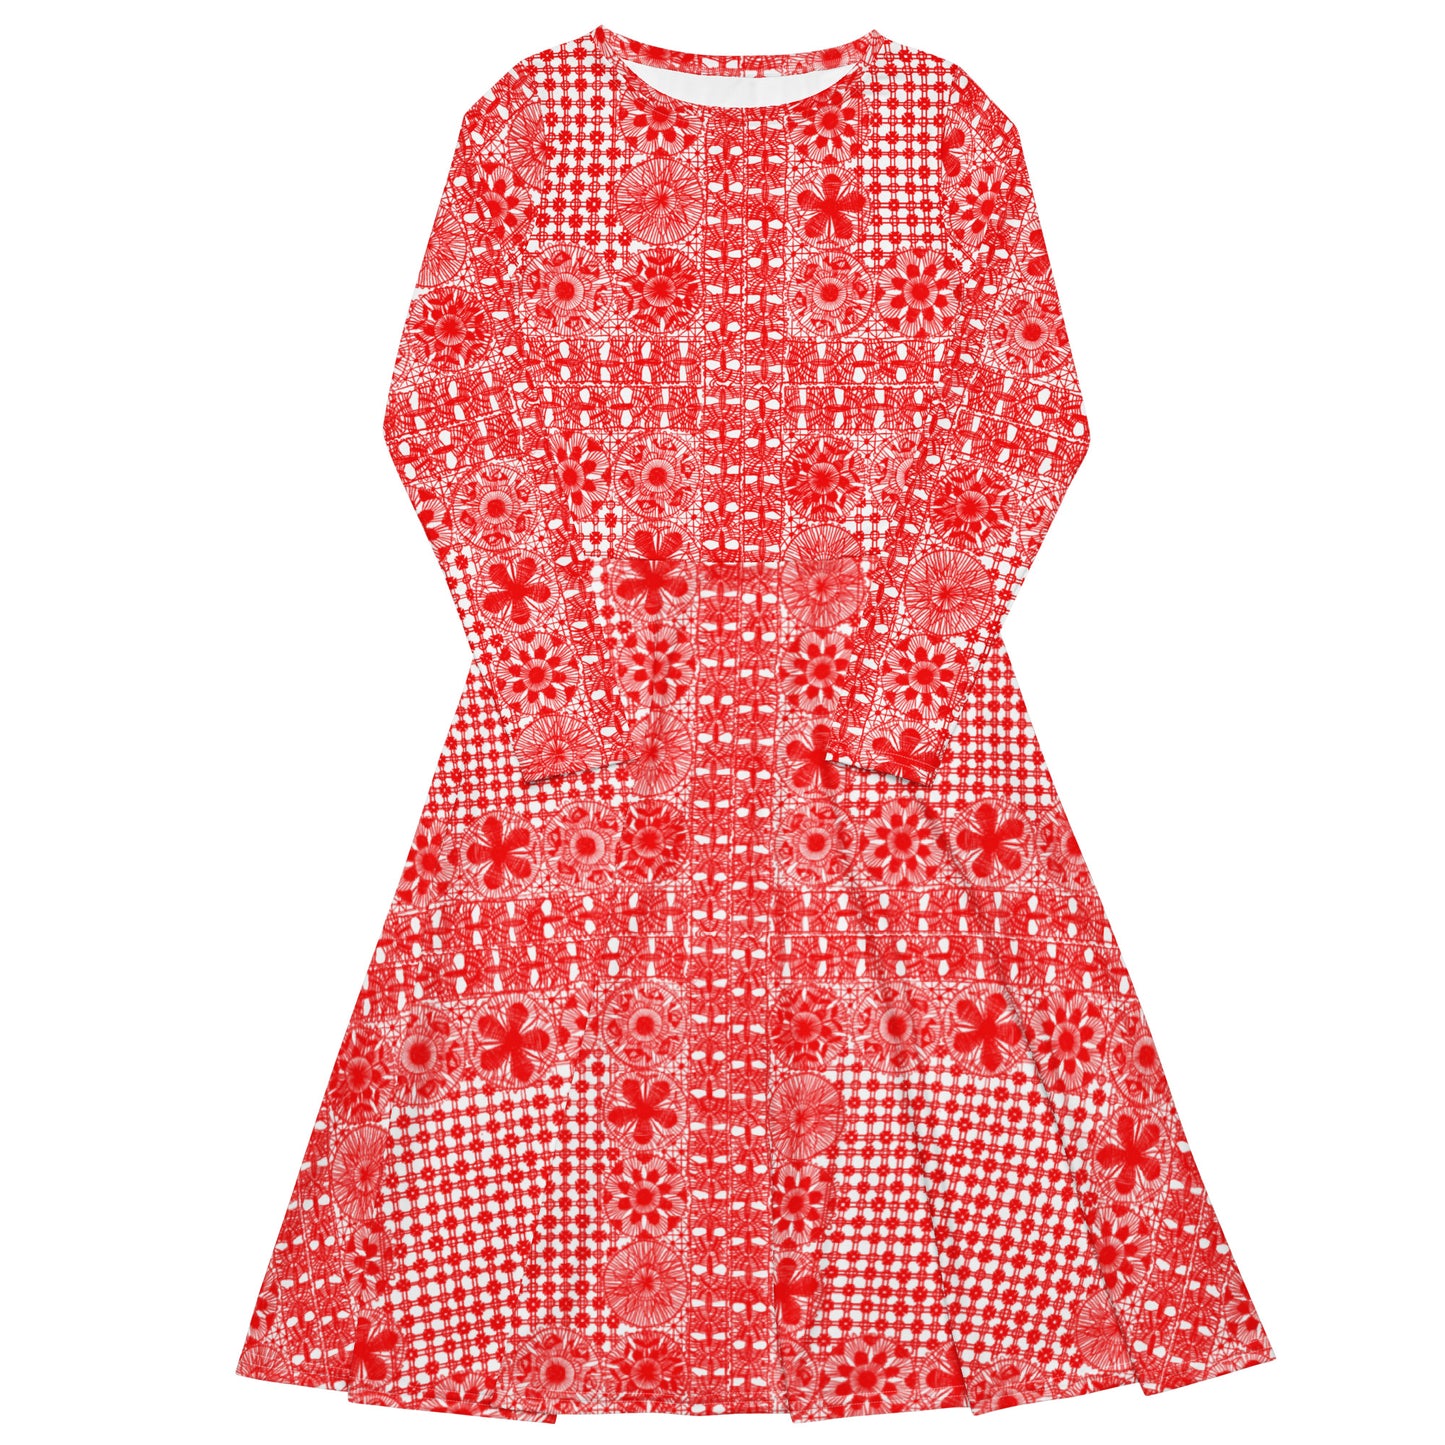 Lace dress long sleeve midi red dress lace dress ñanduti lace dress paraguay lace - Amaria Studio